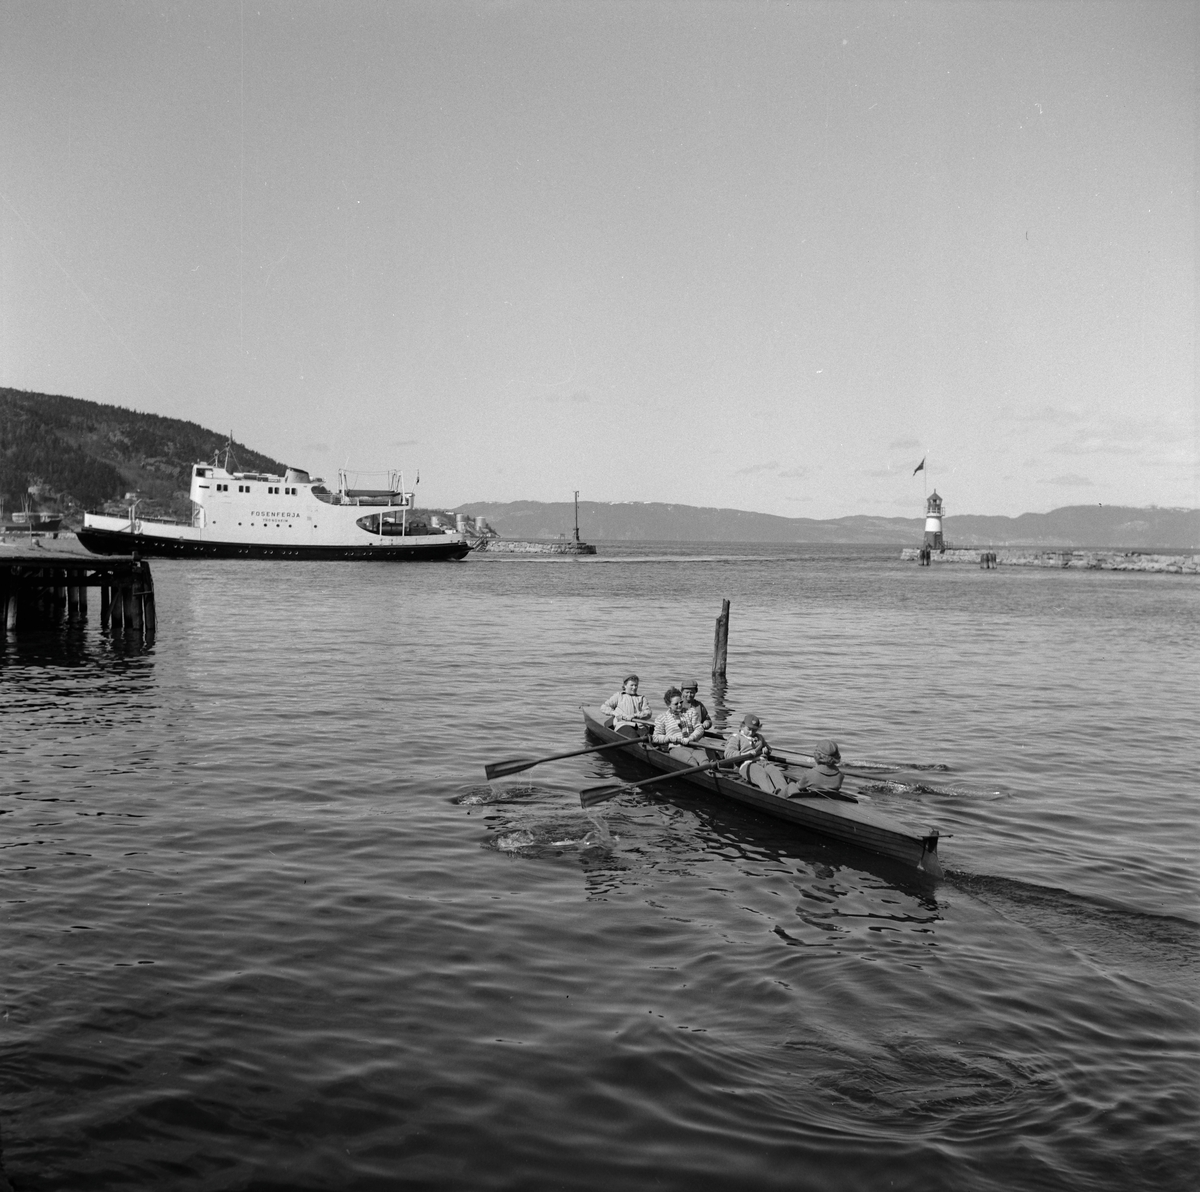 Sesongåpning for båtklubbene på Skansen